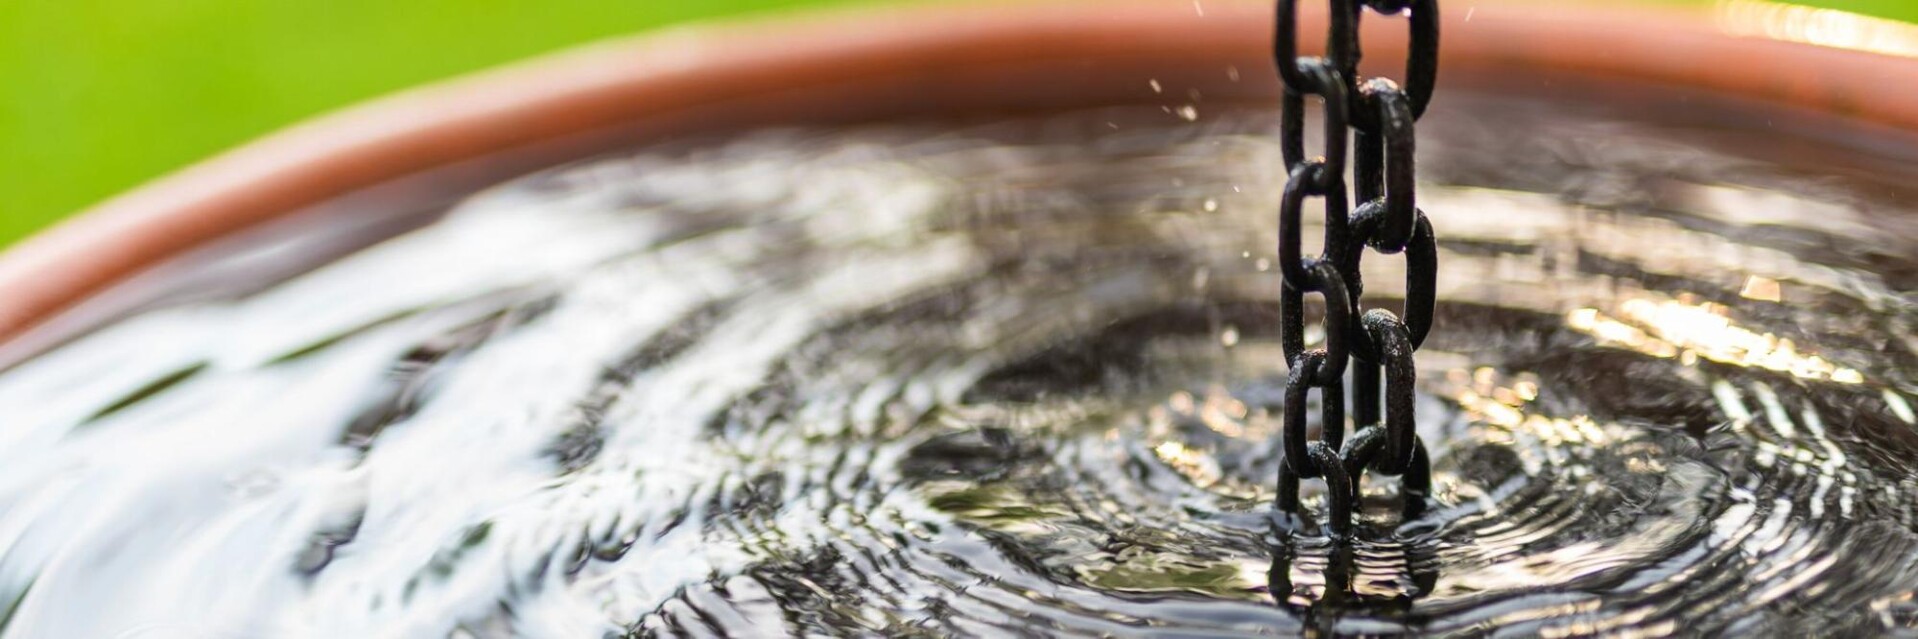 Tipy, jak správně používat sudy na dešťovou vodu 